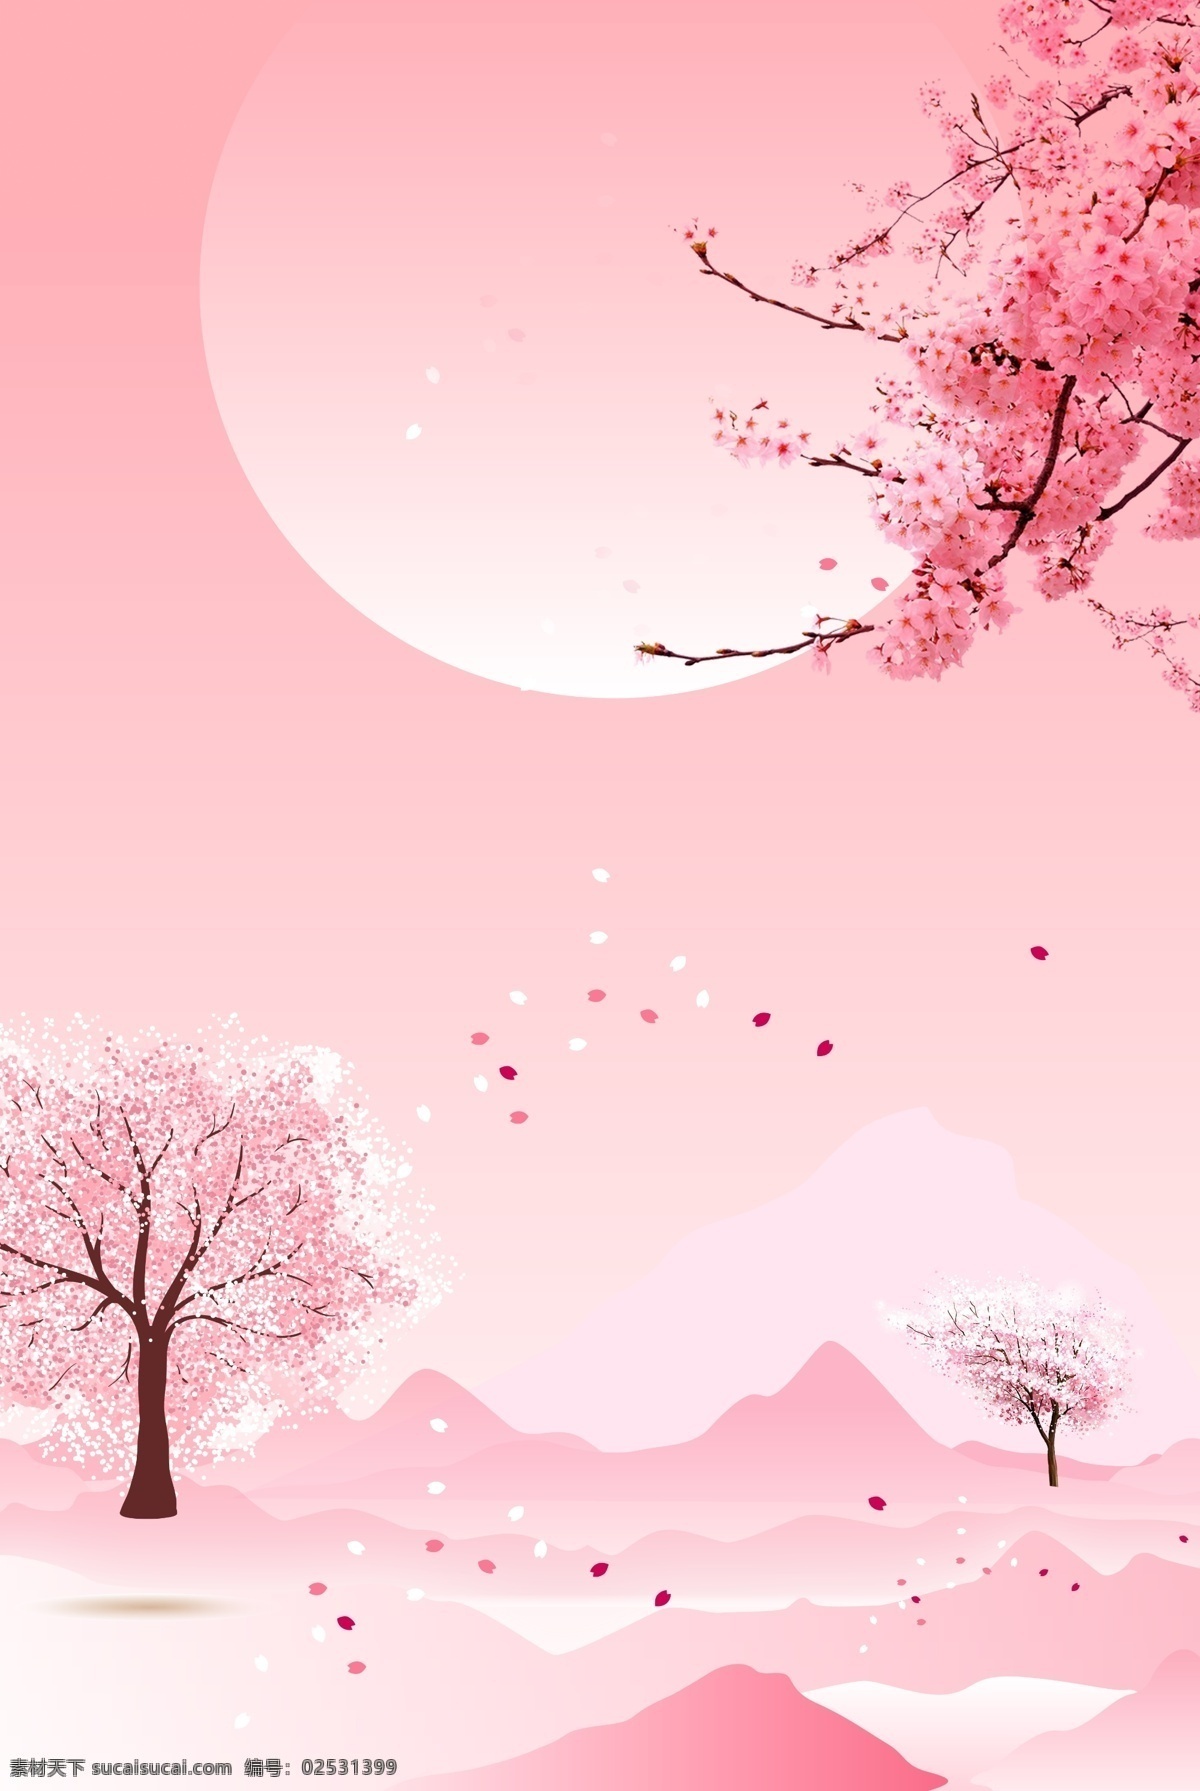 桃花 满天飞 唯美 背景 桃花节 春天 春季 清新 春季上新 粉色 花卉